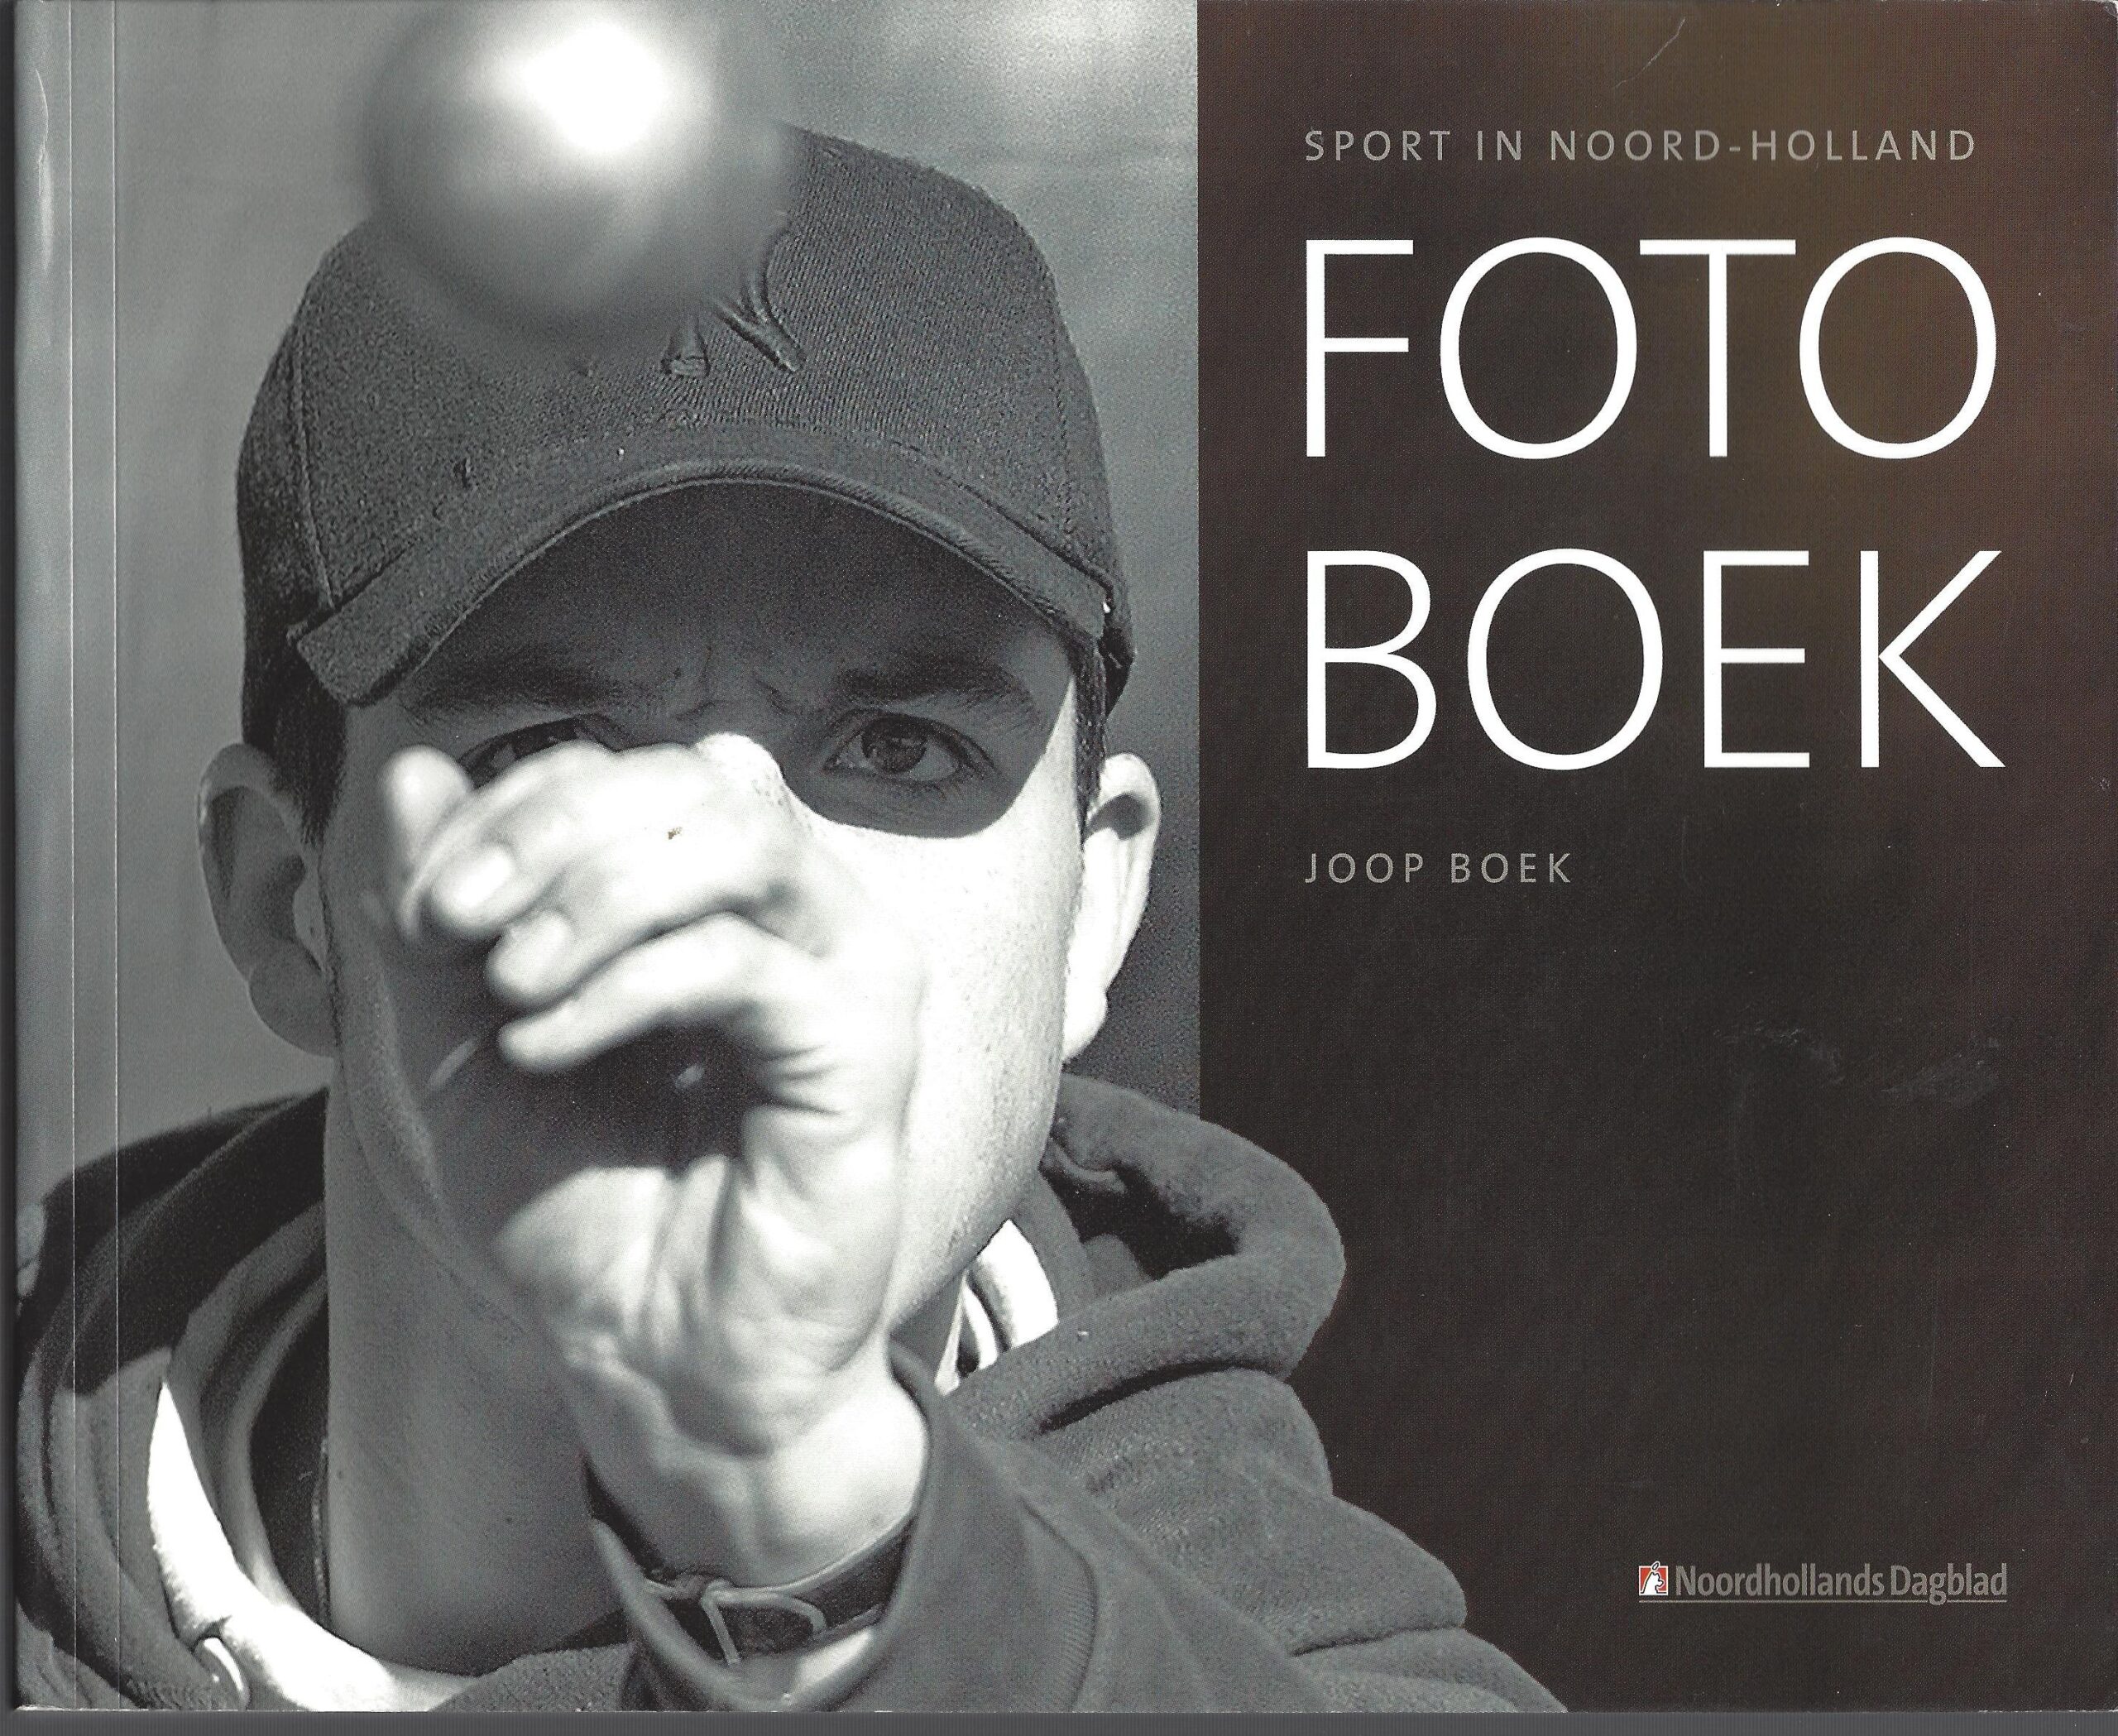 Boek, Joop - Sport in Noord-Holland: Foto Boek